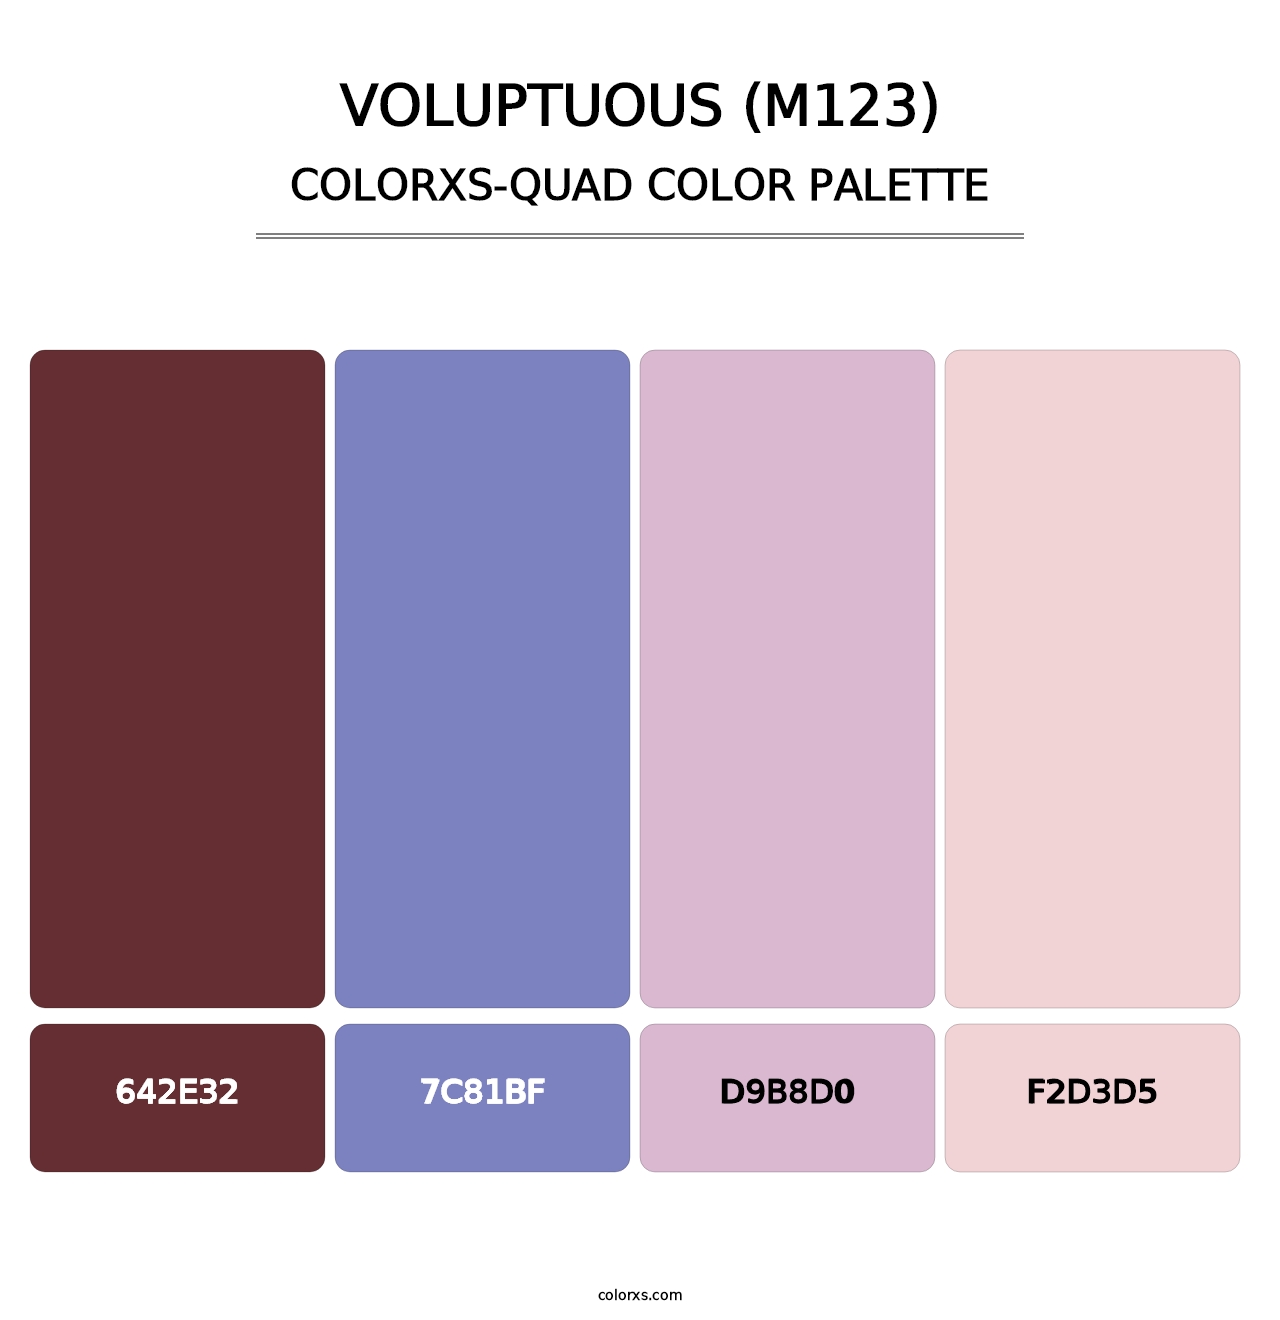 Voluptuous (M123) - Colorxs Quad Palette